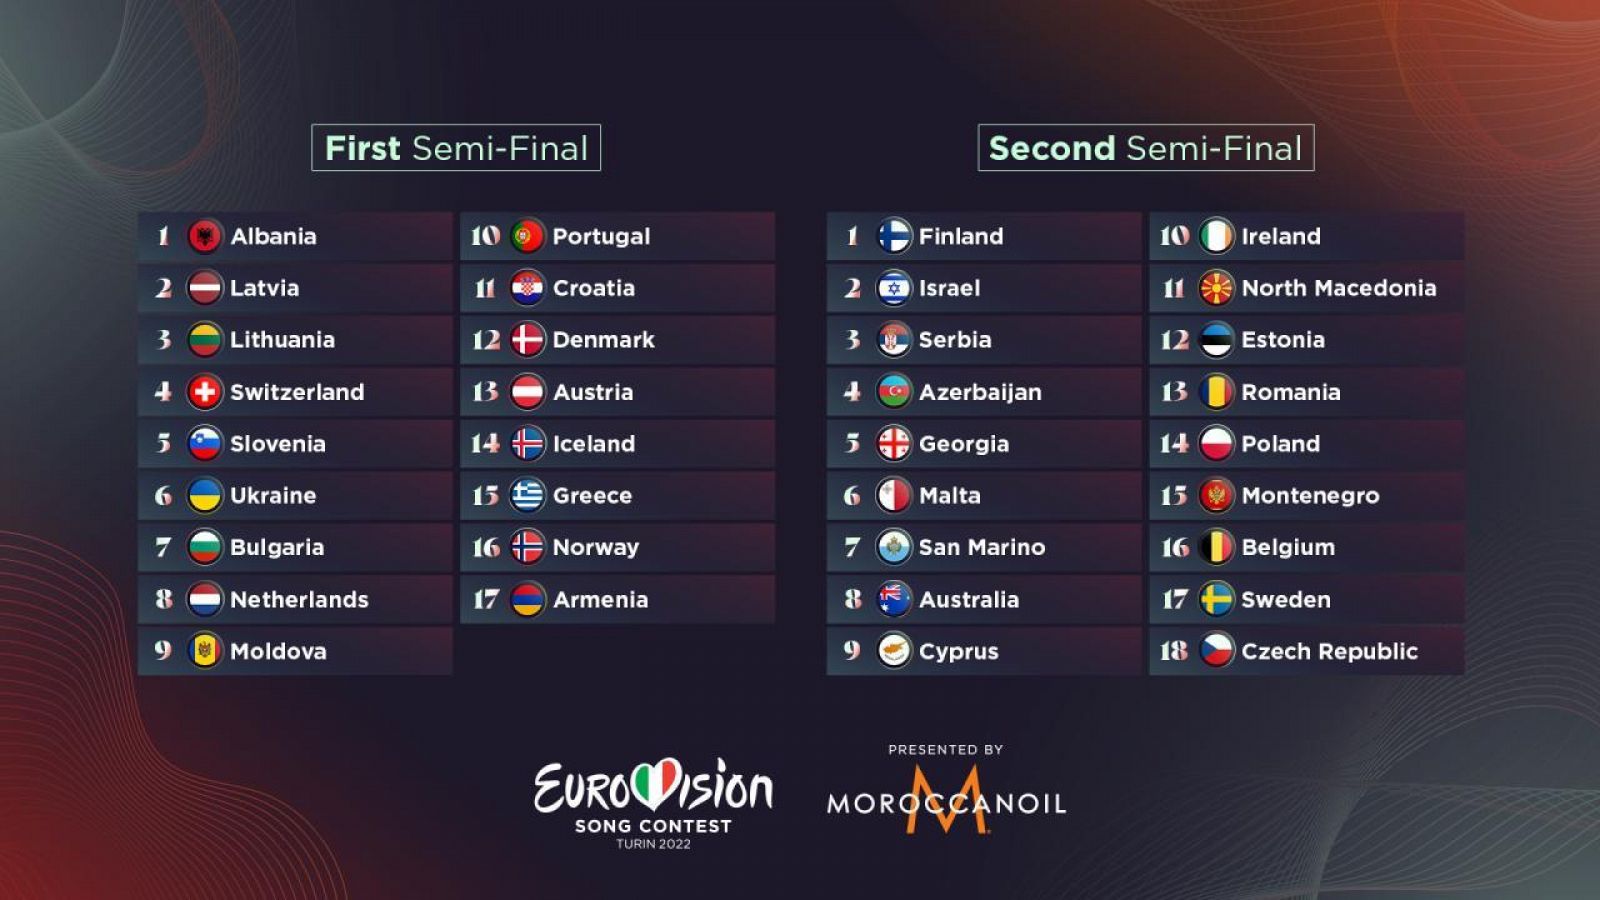 ¿Quién va primero en Eurovisión 2022